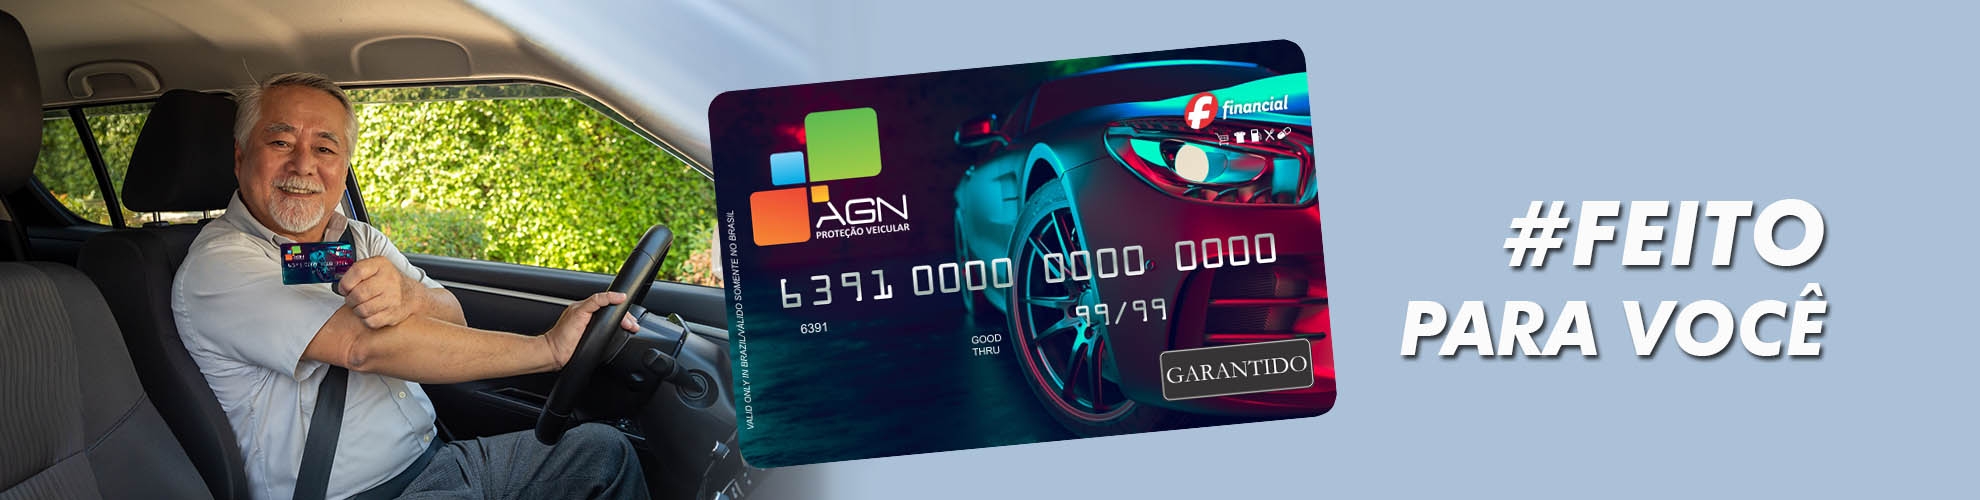 Cartão AGN - Crédito